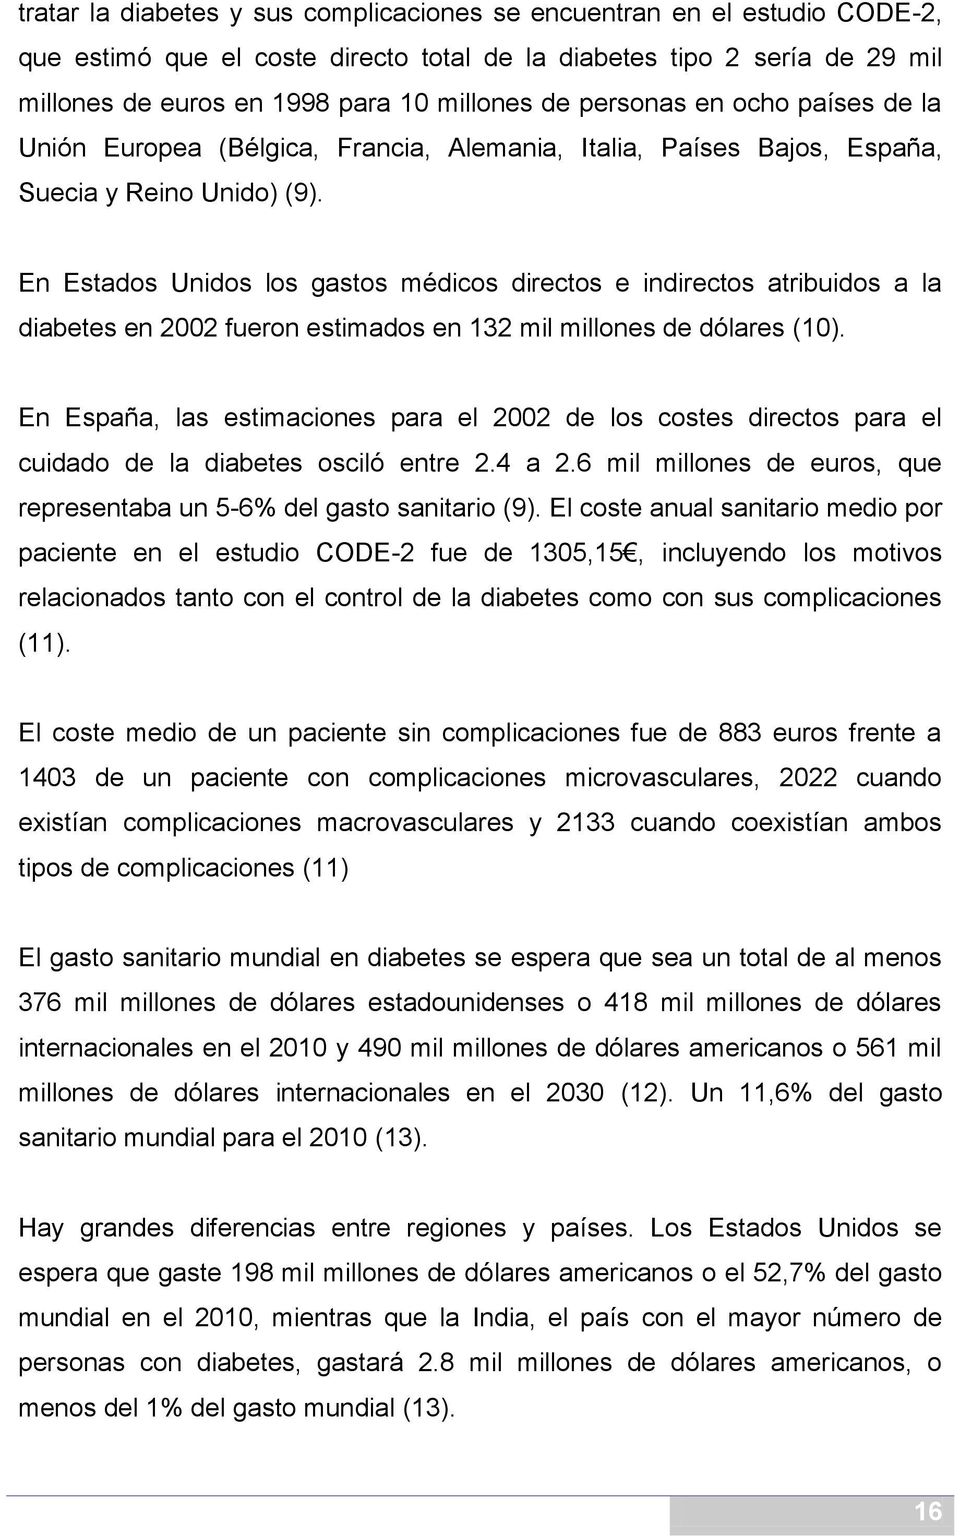 En Estados Unidos los gastos médicos directos e indirectos atribuidos a la diabetes en 2002 fueron estimados en 132 mil millones de dólares (10).